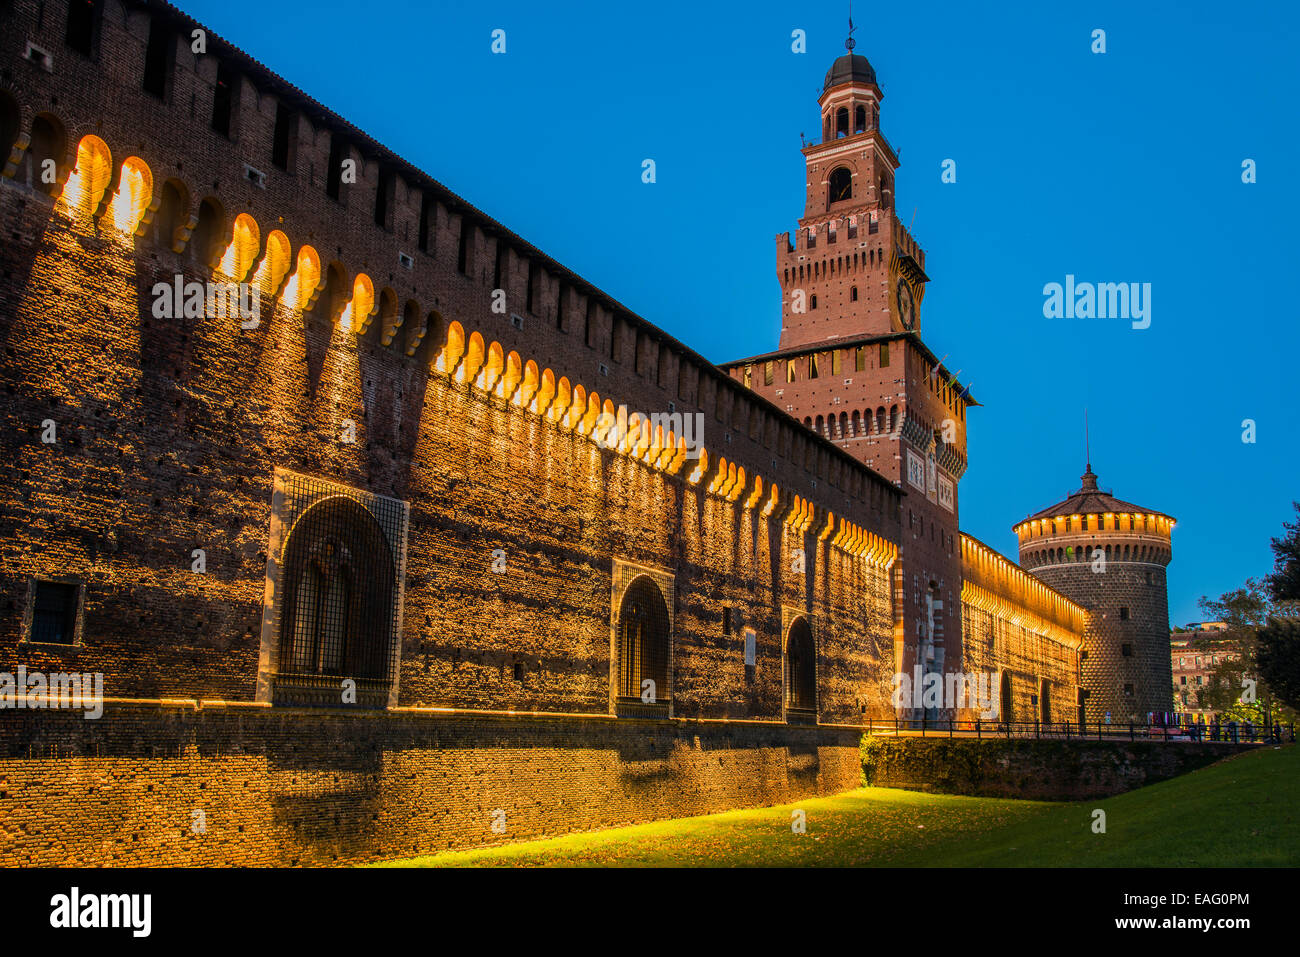 Castello Sforzesco castello medievale al crepuscolo, Milano, Lombardia, Italia Foto Stock